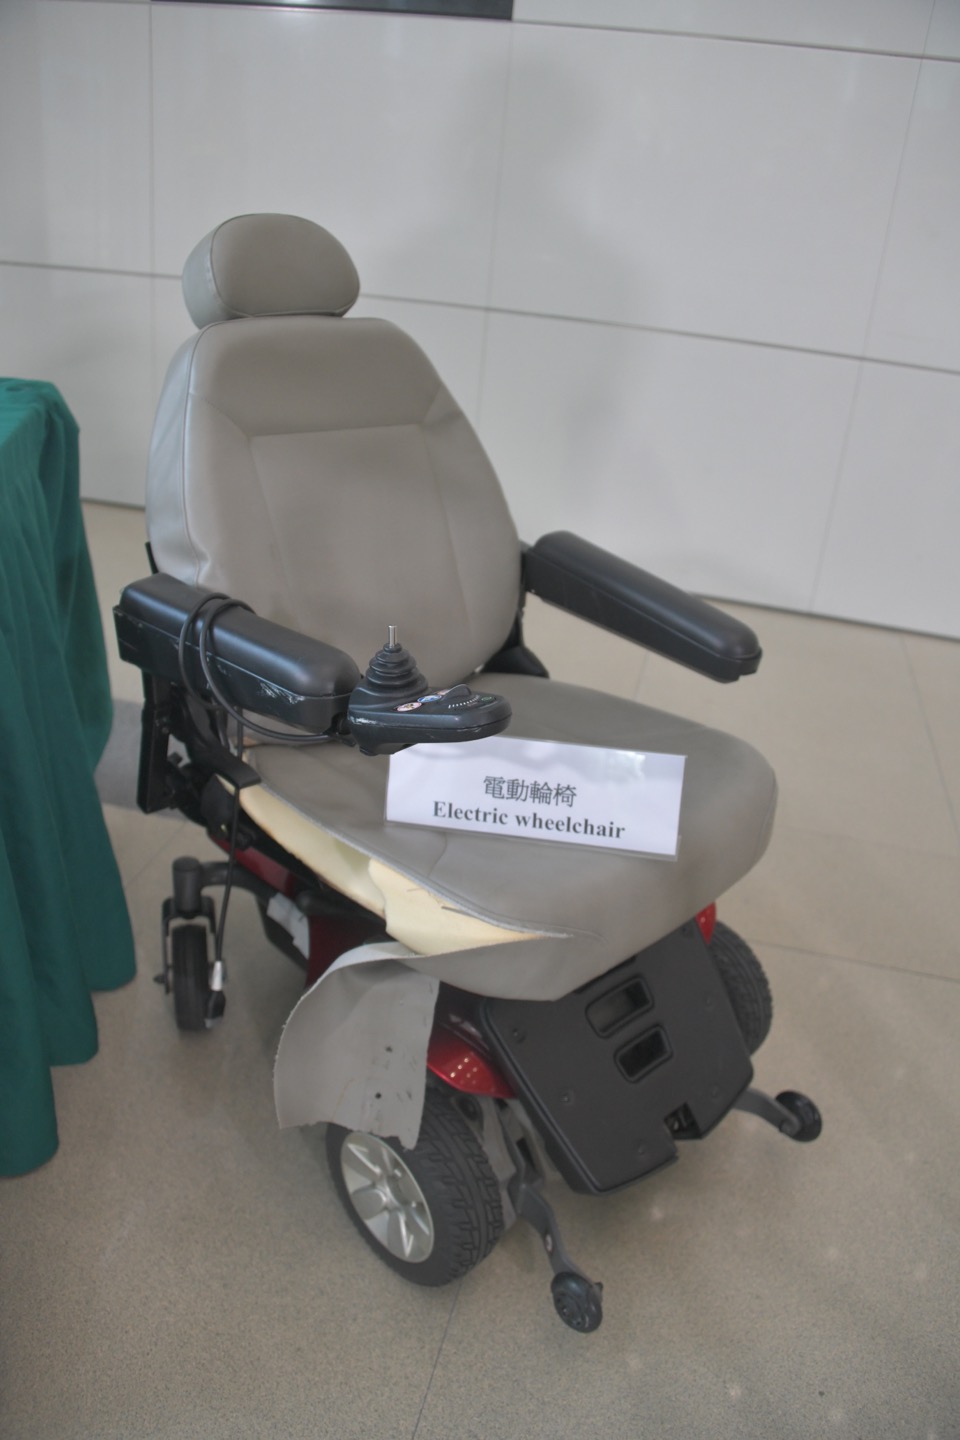 機場海關首次發現旅客利用寄艙電動輪椅藏毒。楊偉亨攝